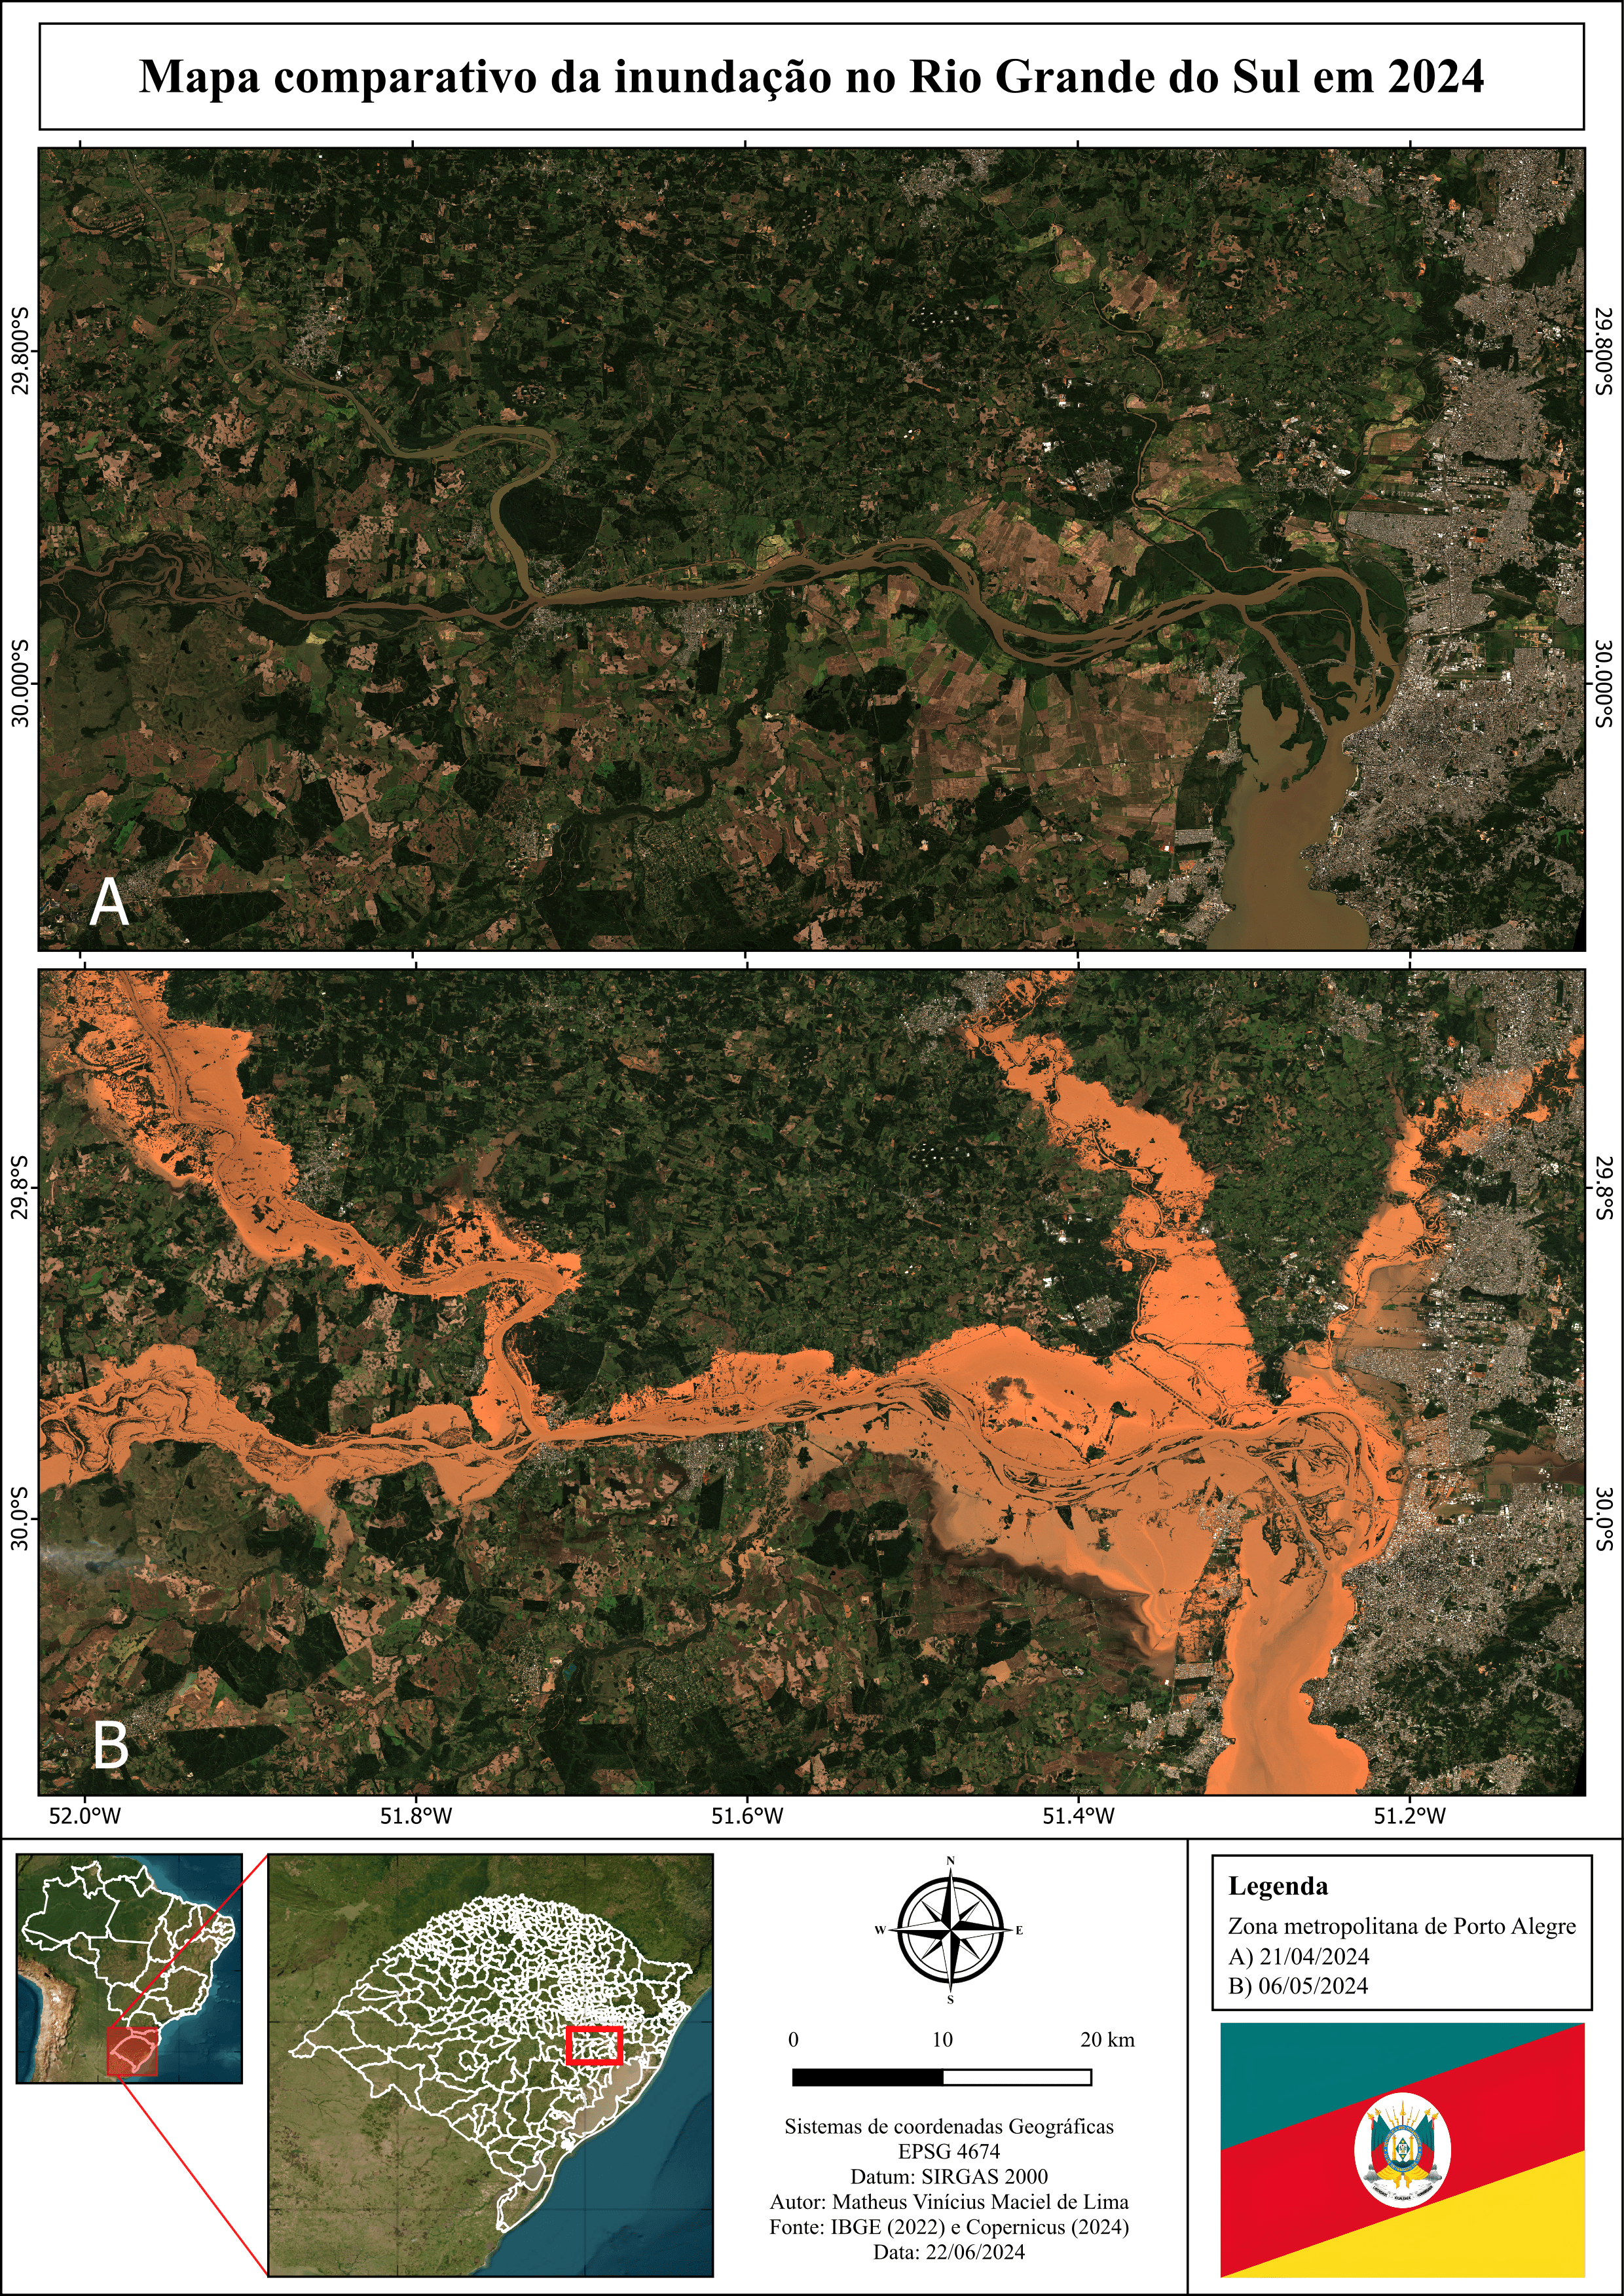 Inundação do Rio Grande do Sul em 2024